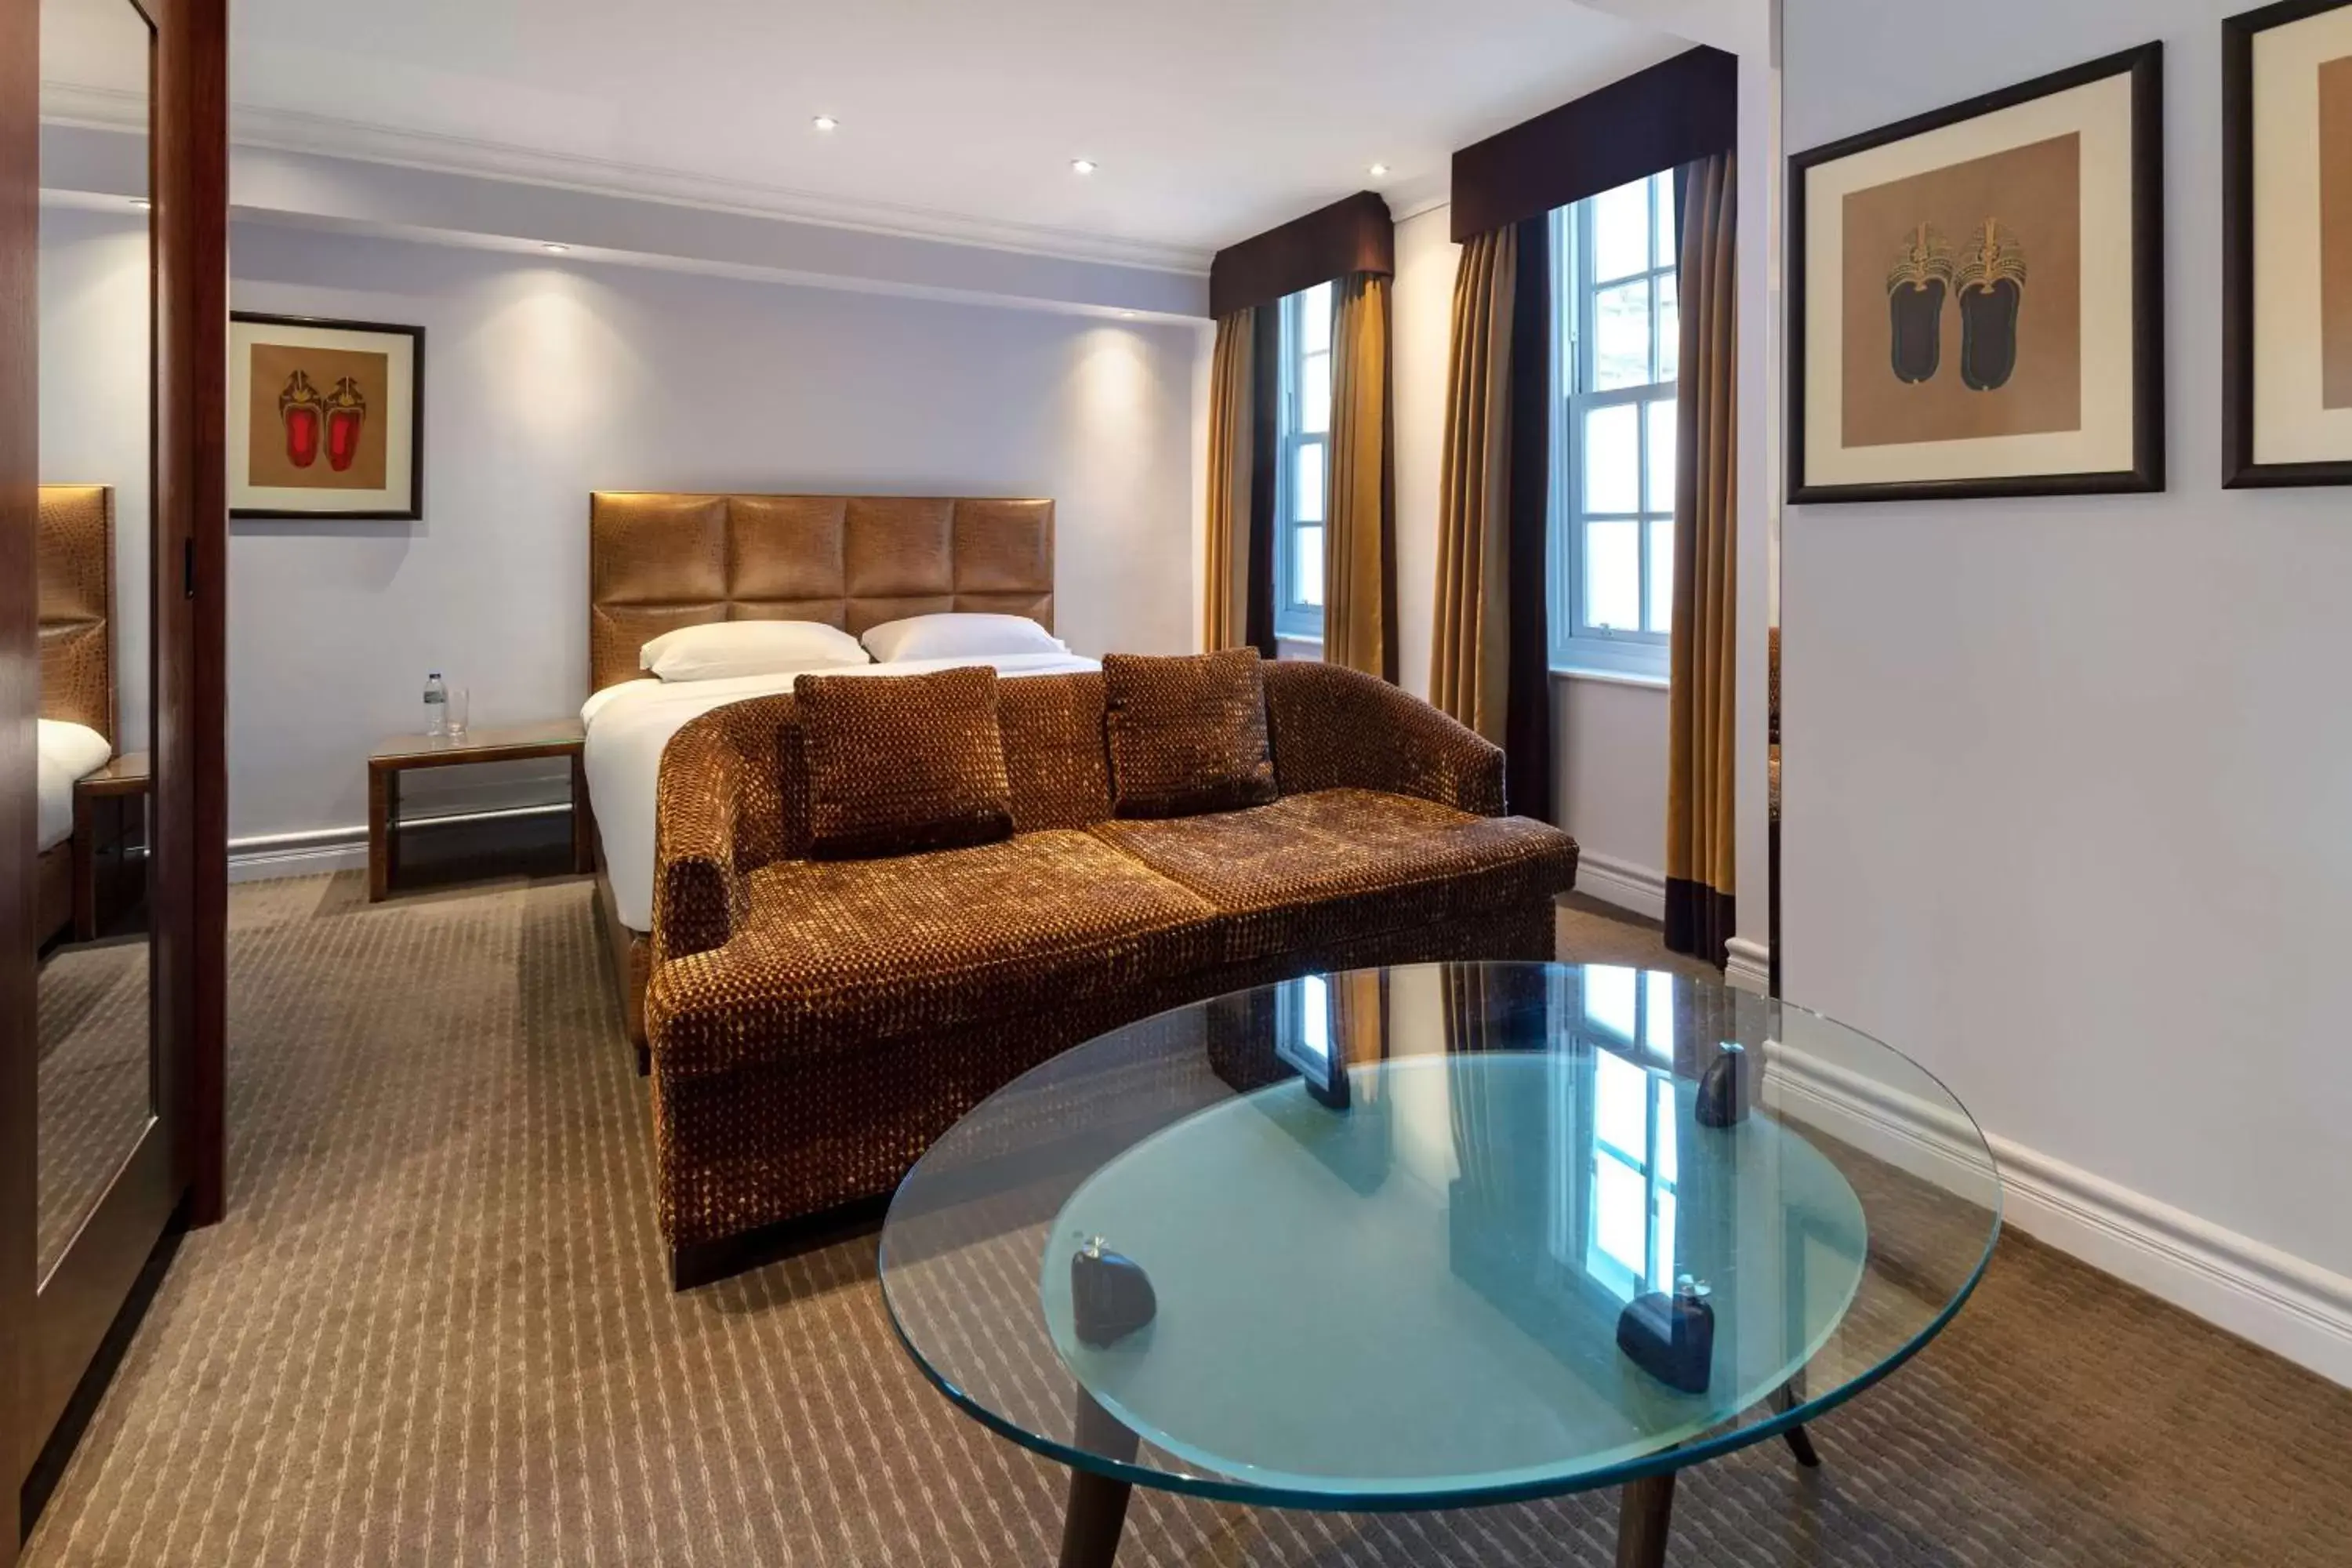 Bedroom in Radisson Blu Edwardian Bond Street Hotel, London